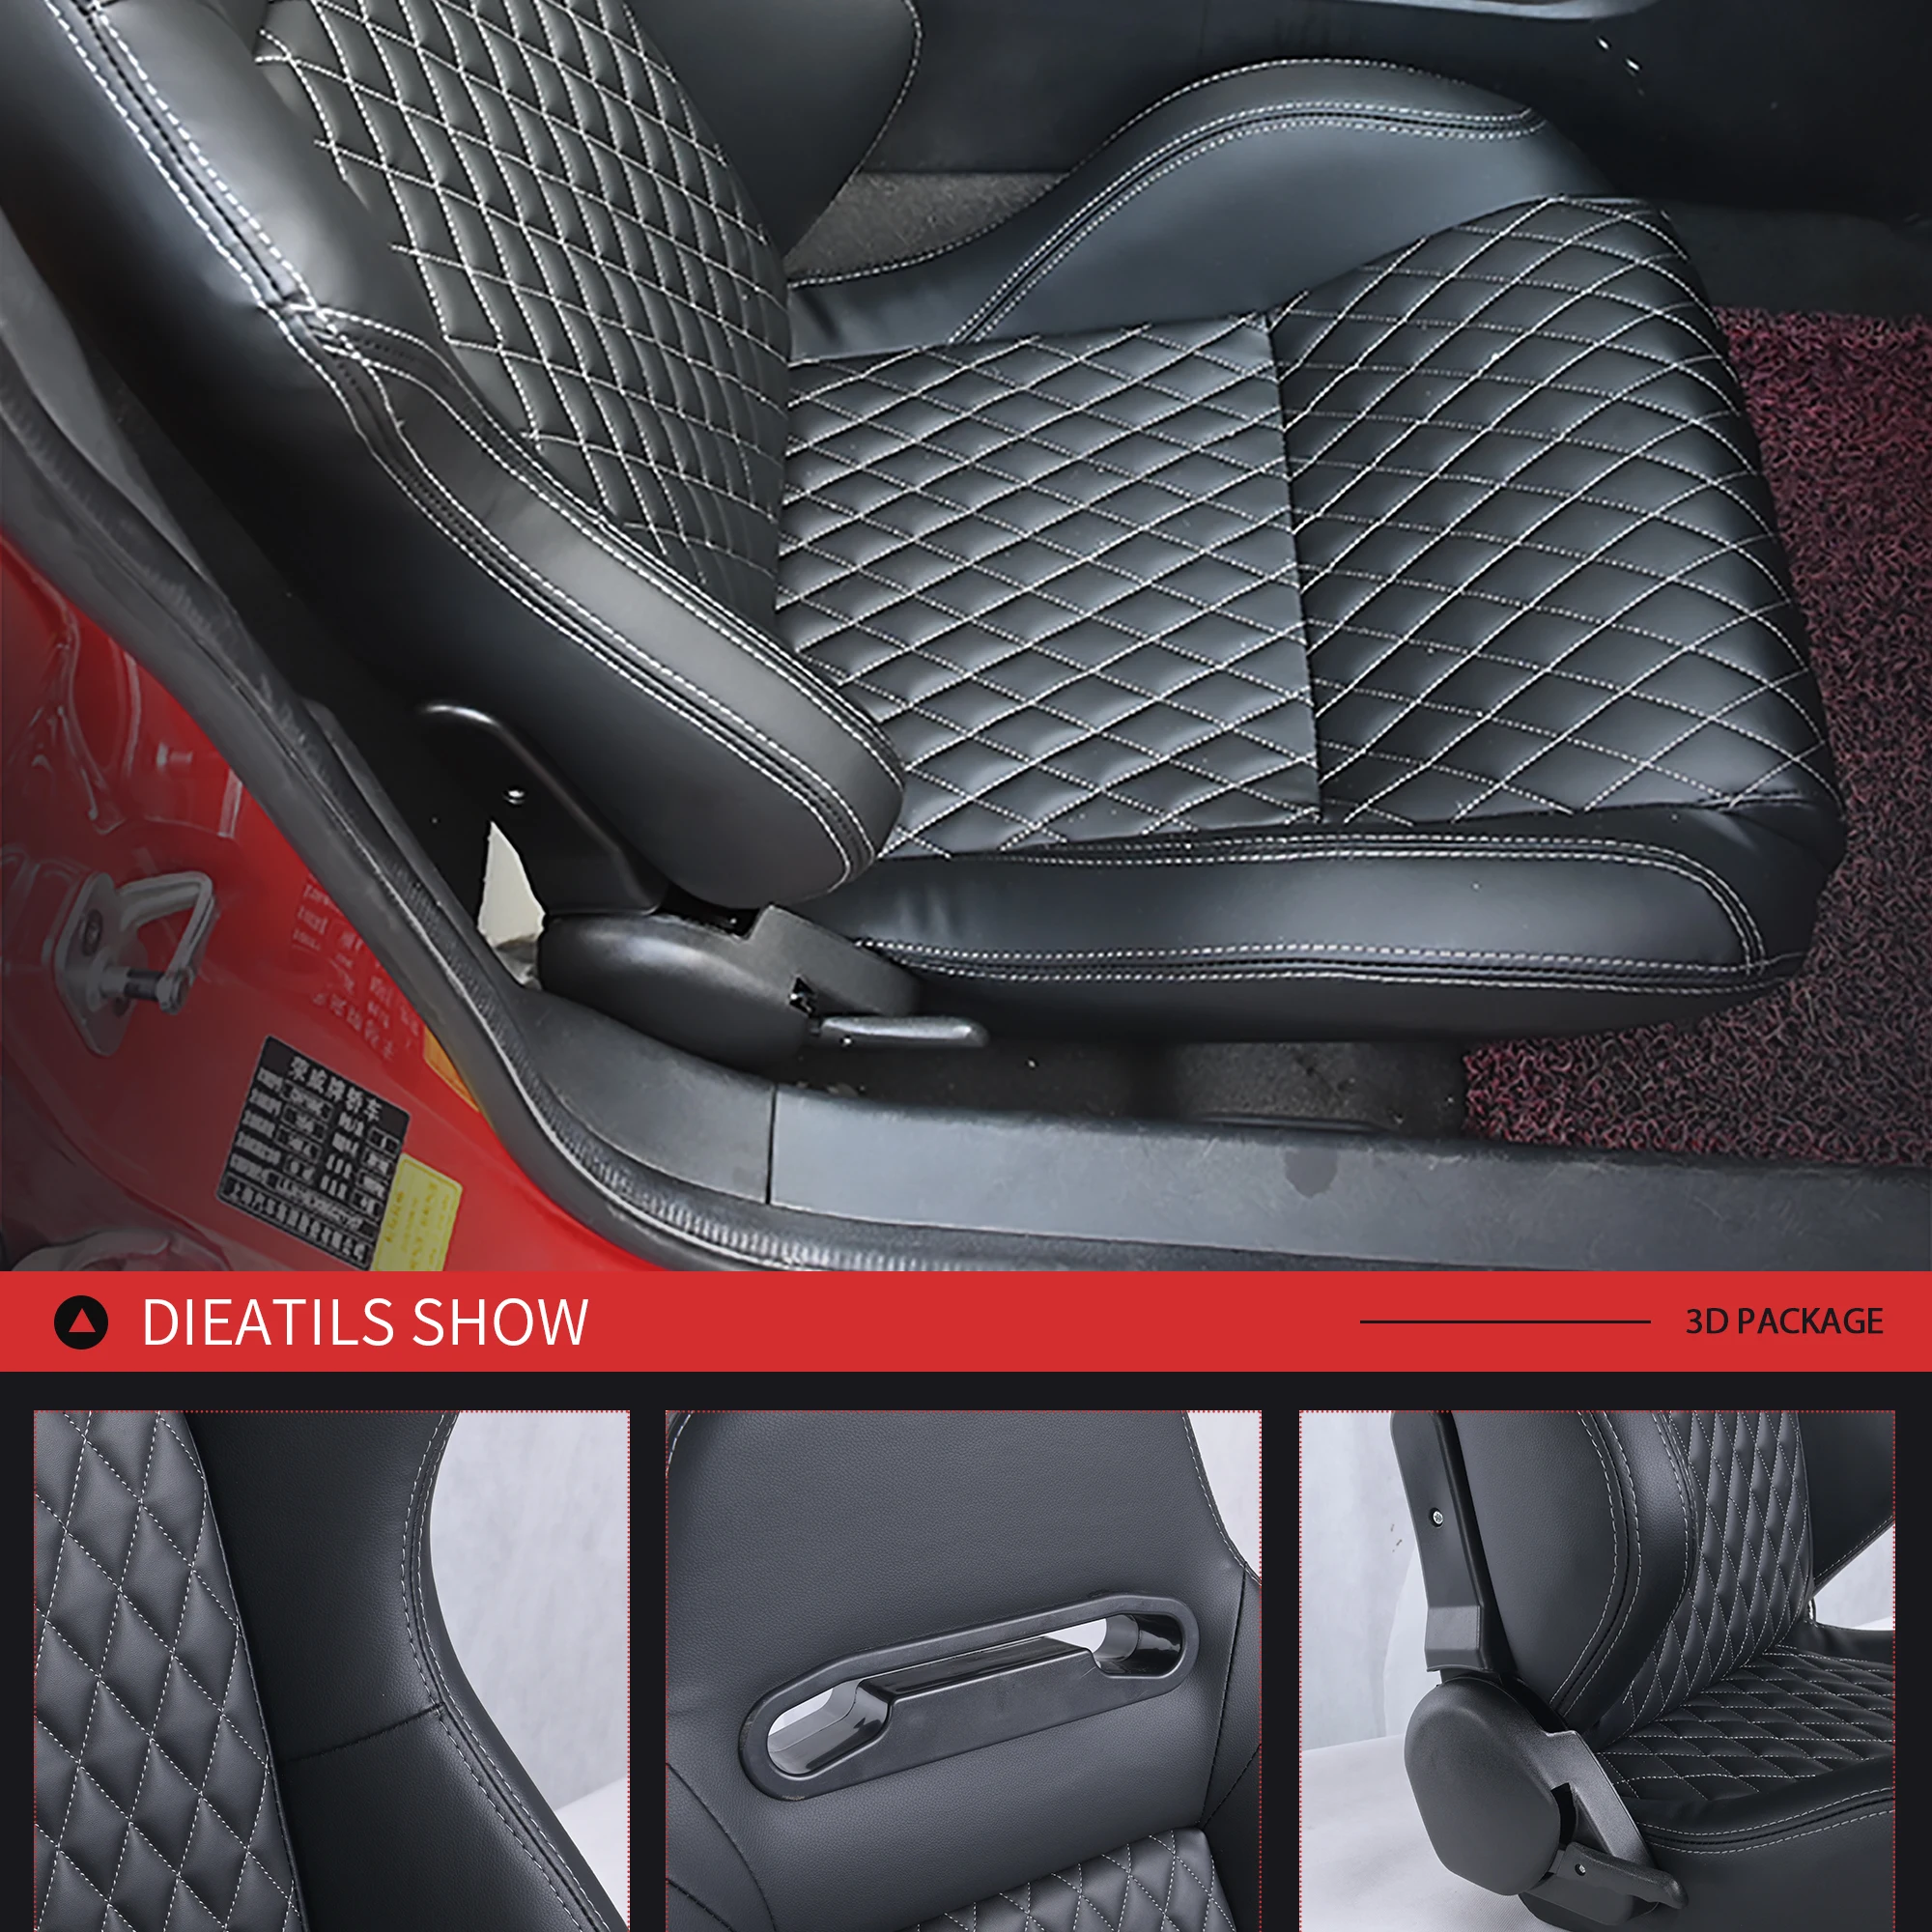 R-EP регулируемое сиденье для гоночного автомобиля, универсальное для спортивного автосимулятора, сиденье-ведро черного цвета из кожи ПВХ, 1 пара XH-1035-BK